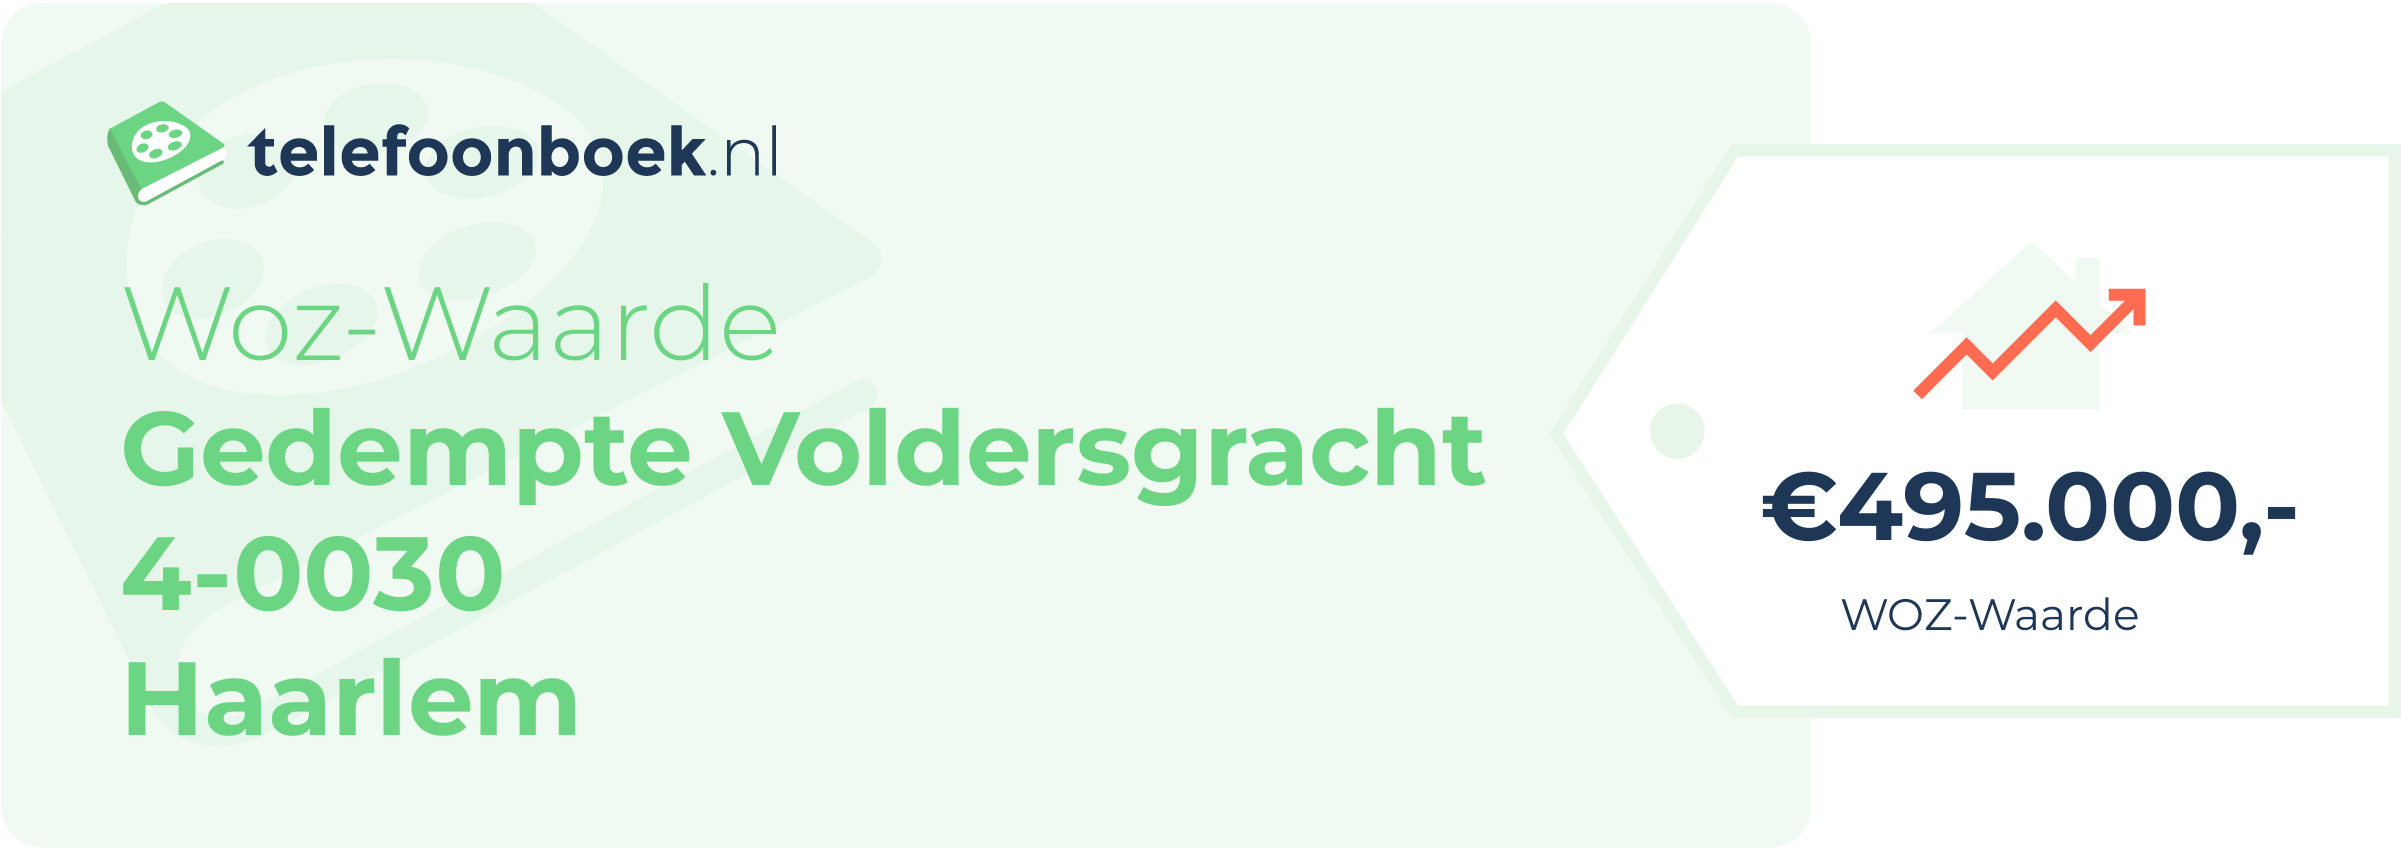 WOZ-waarde Gedempte Voldersgracht 4-0030 Haarlem